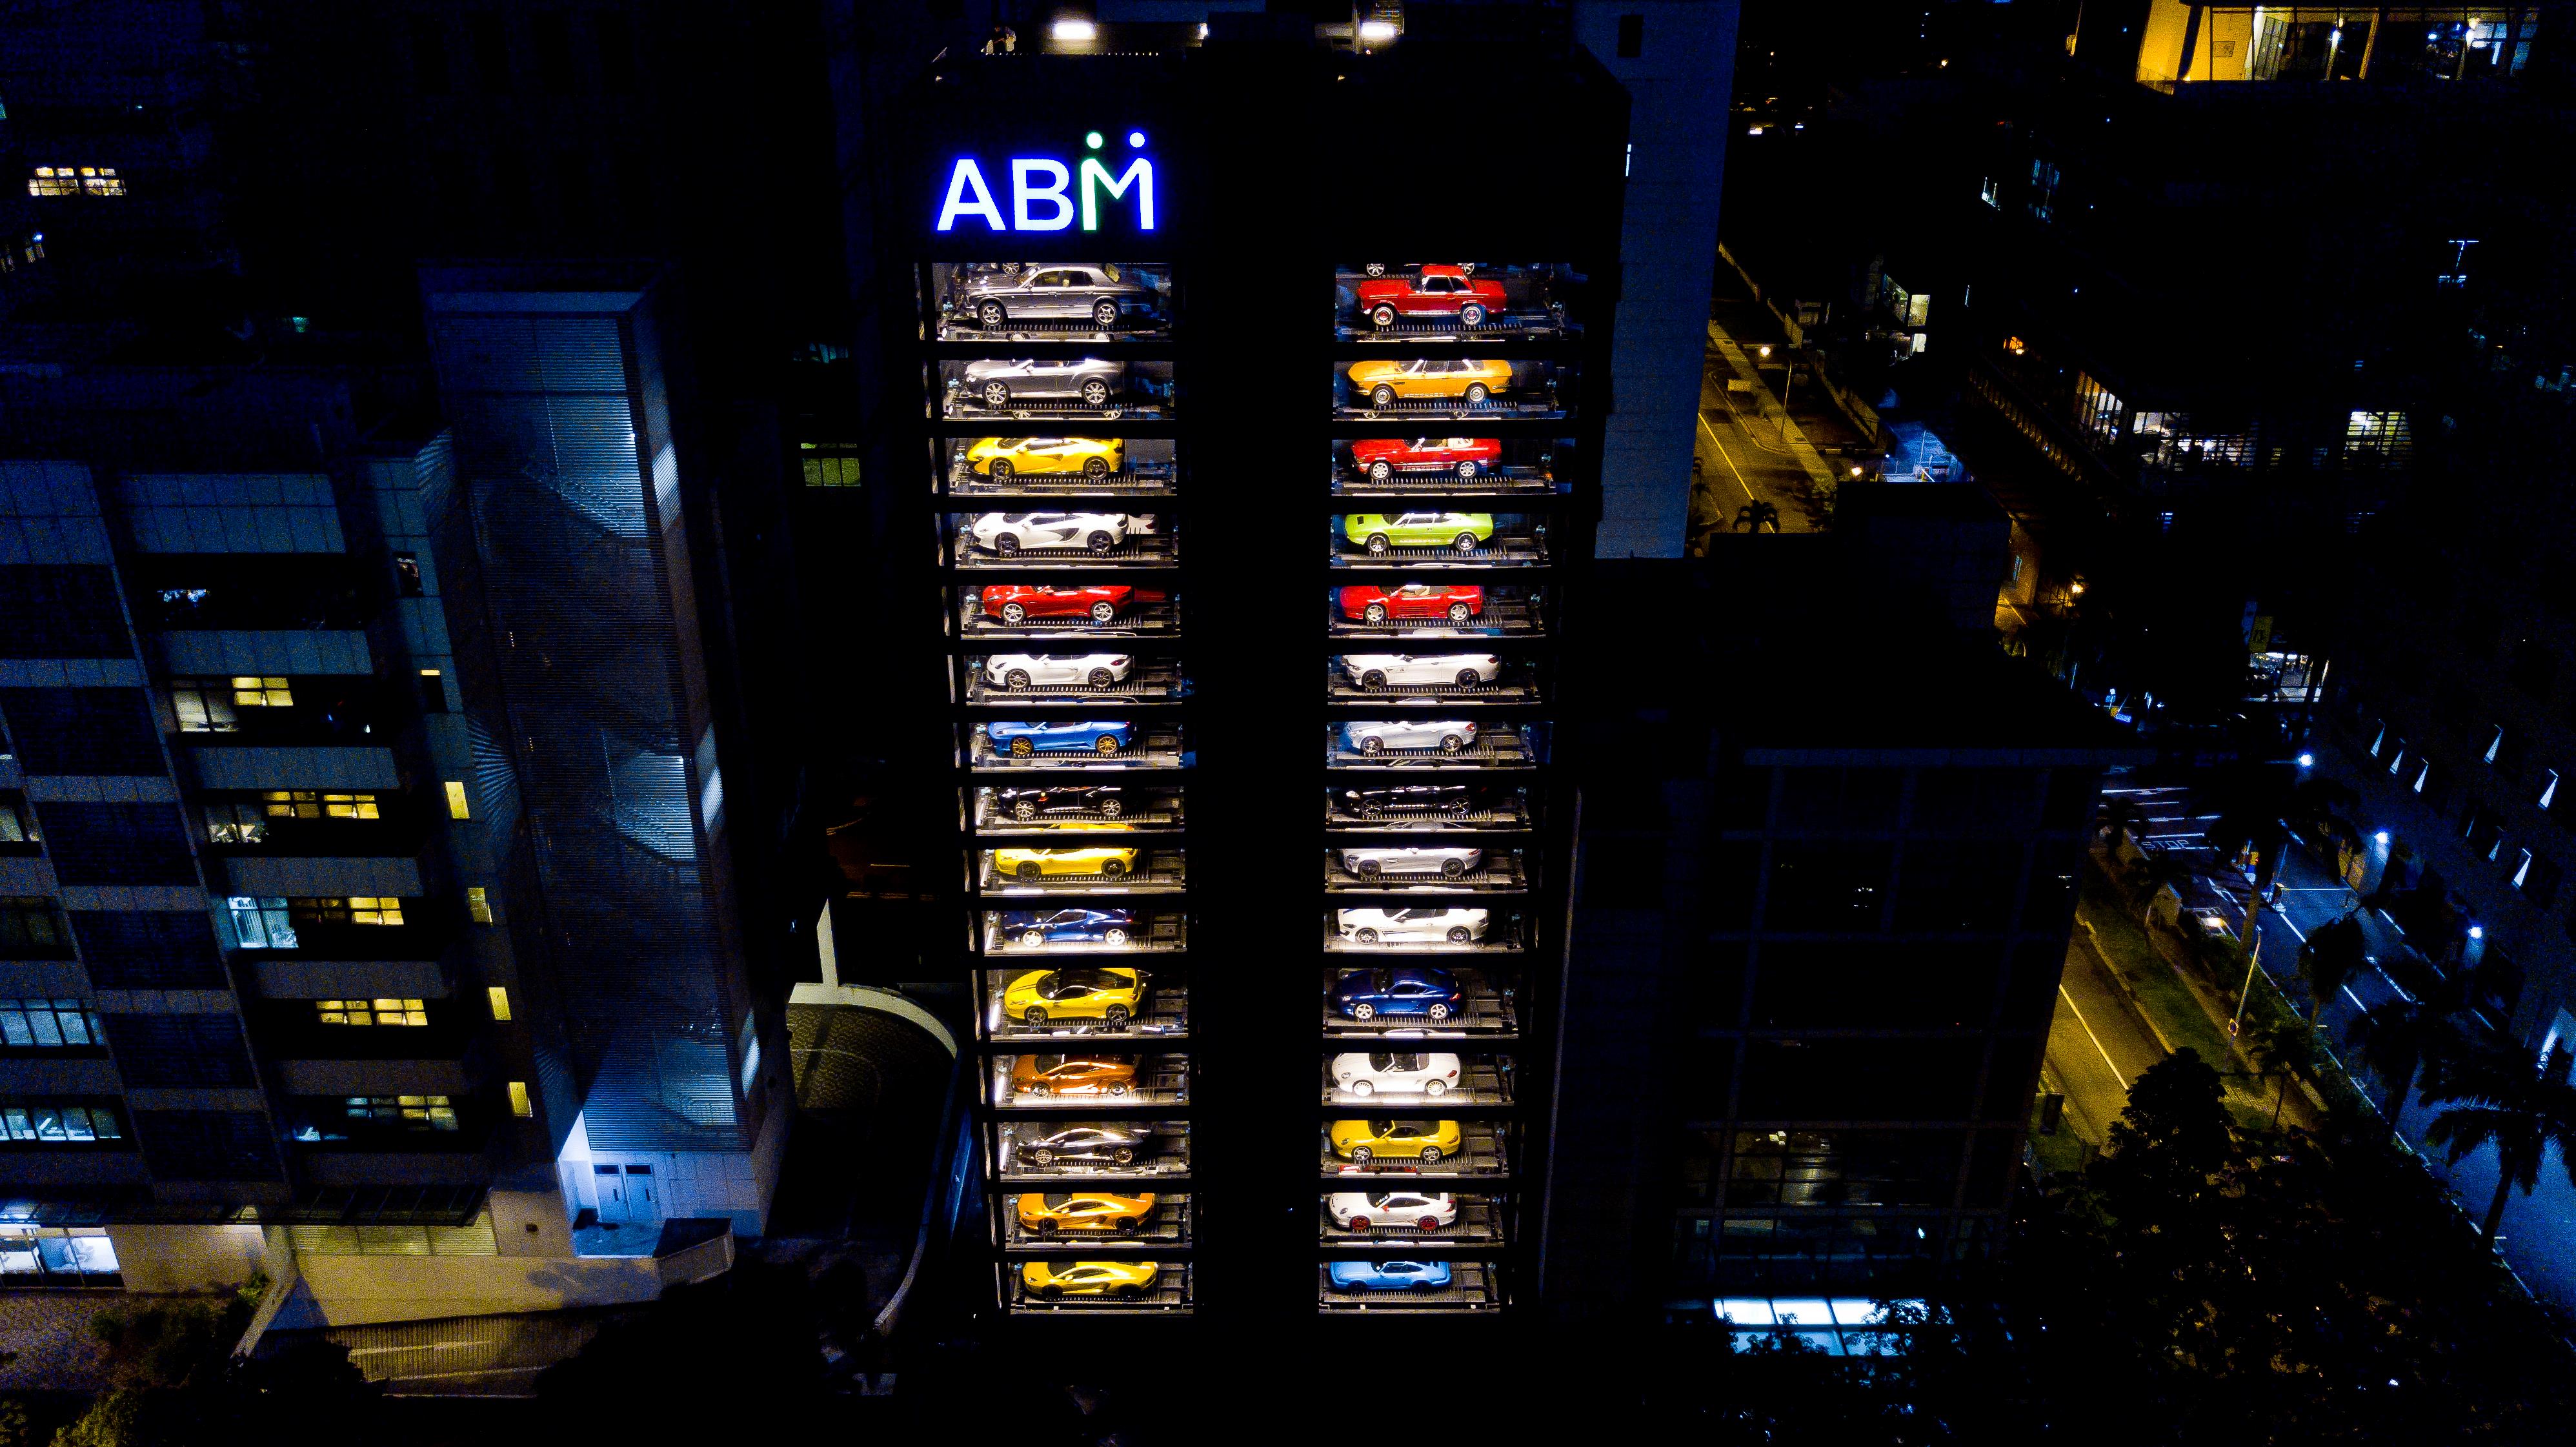 Autobahn Motors opens the world’s largest car vending machine